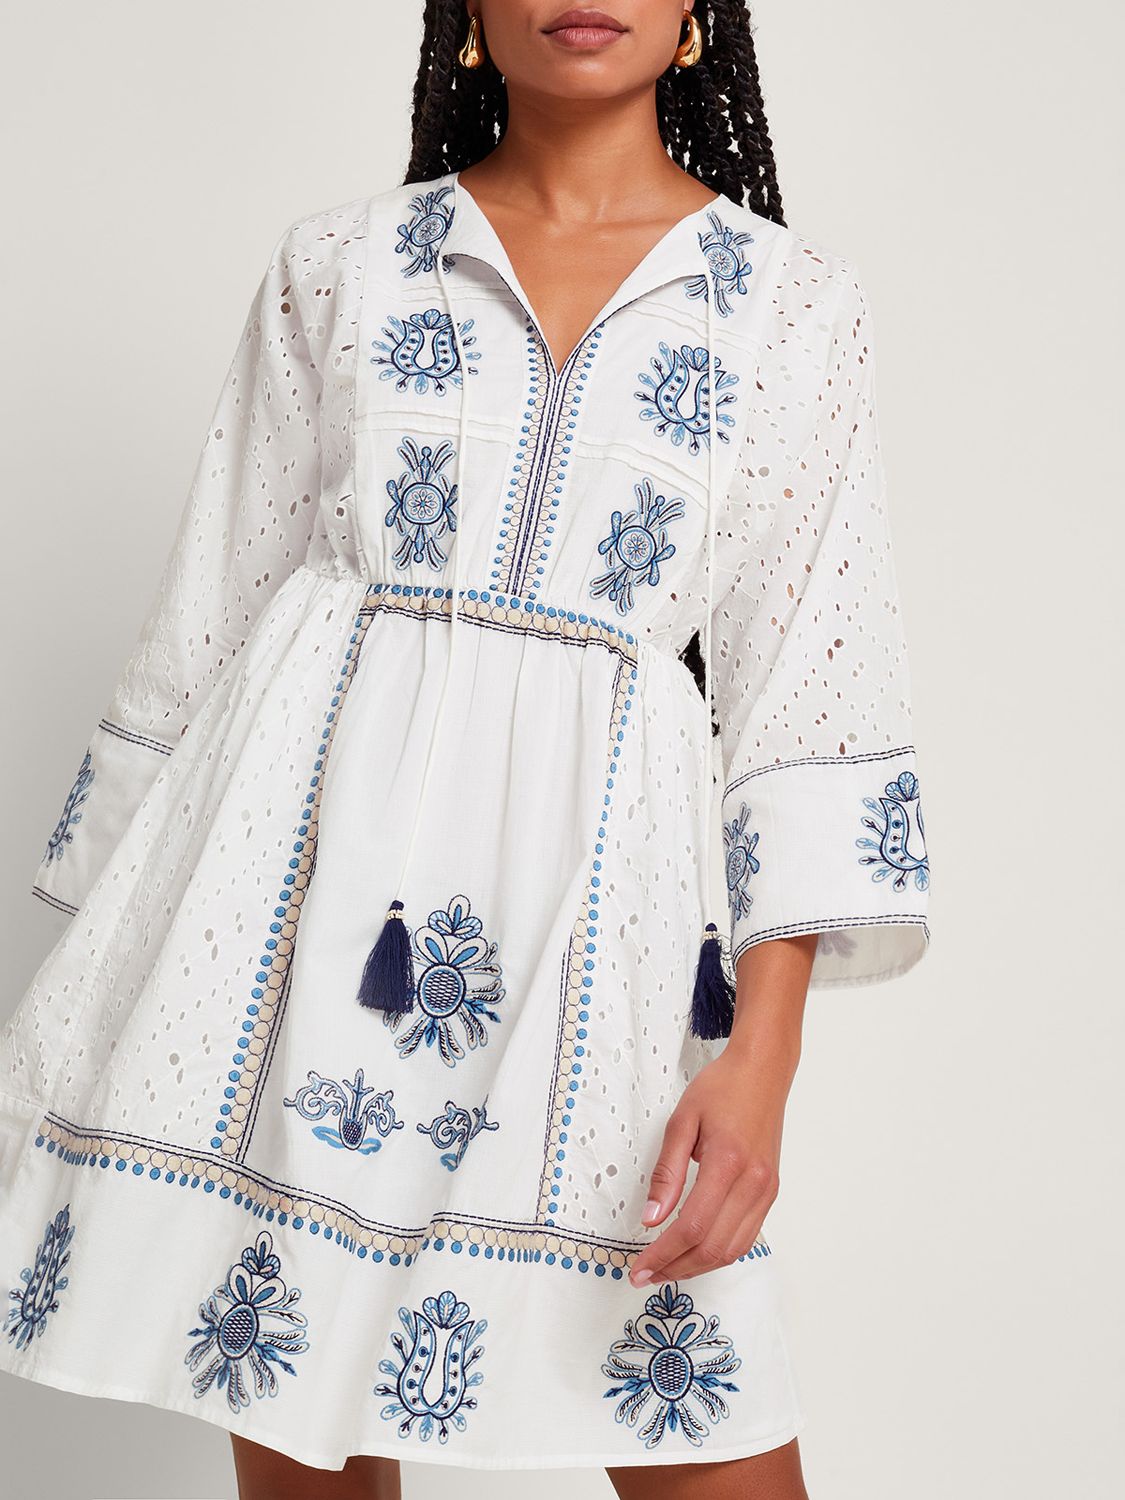 Monsoon Katied Embroidered Kaftan Dress, Ivory/Multi, S